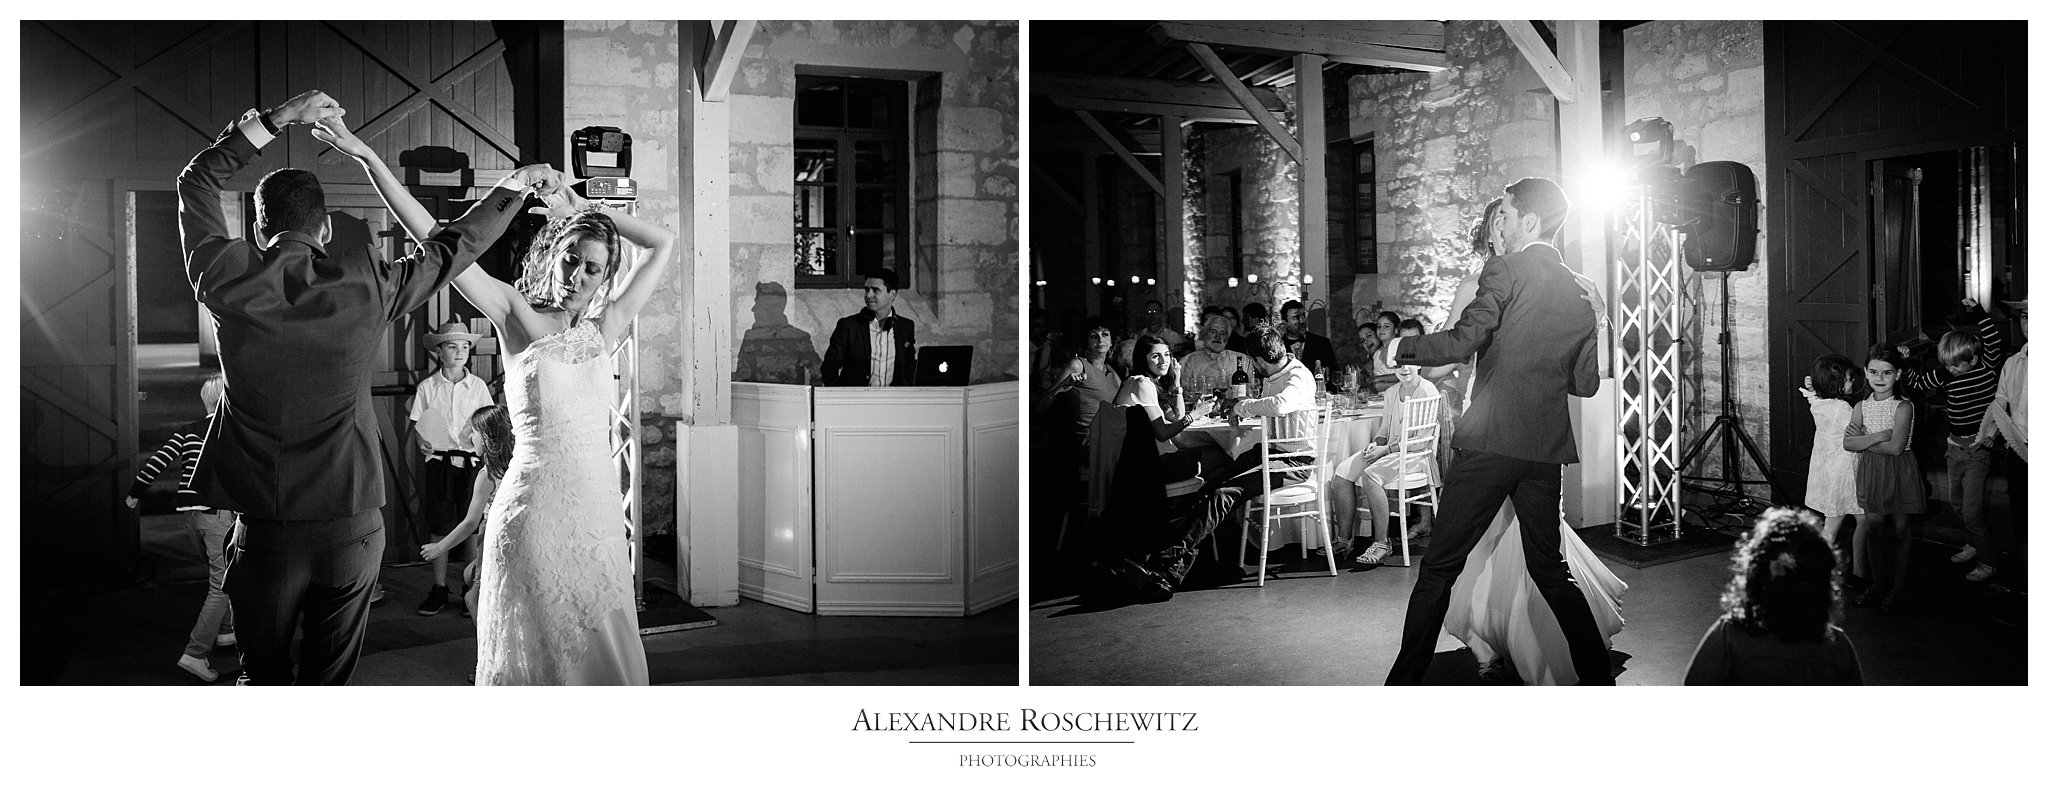 Le mariage de Anne-Sophie et Pierre à Blanquefort et au Château Giscours en Gironde. Alexandre Roschewitz Photographies.